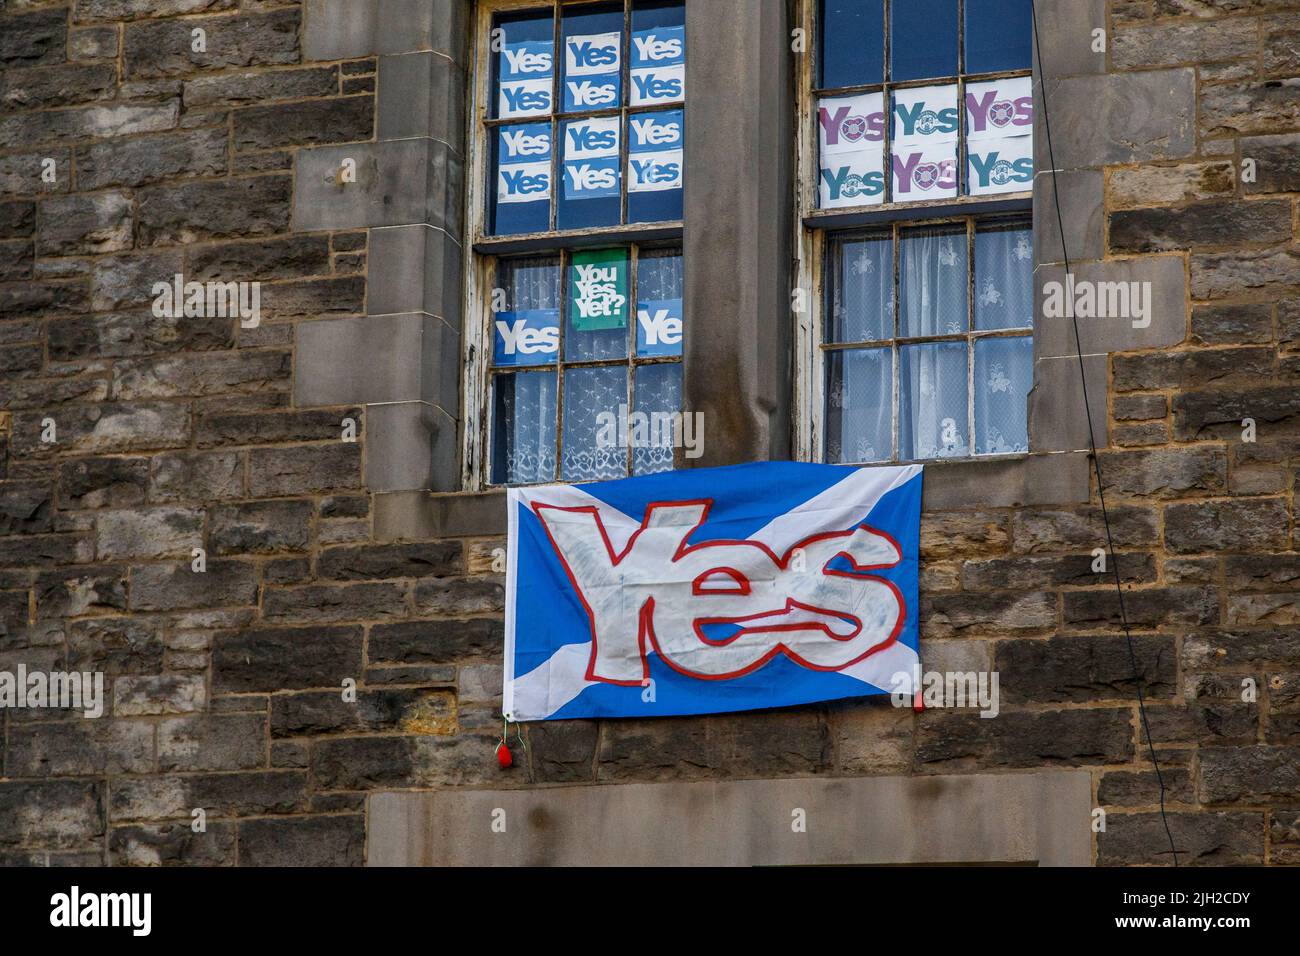 EDINGBURG, GRAN BRETAGNA - 10 SETTEMBRE 2014: Questi sono i manifesti del referendum del 2014 in Scozia sulla finestra di una delle case. Foto Stock